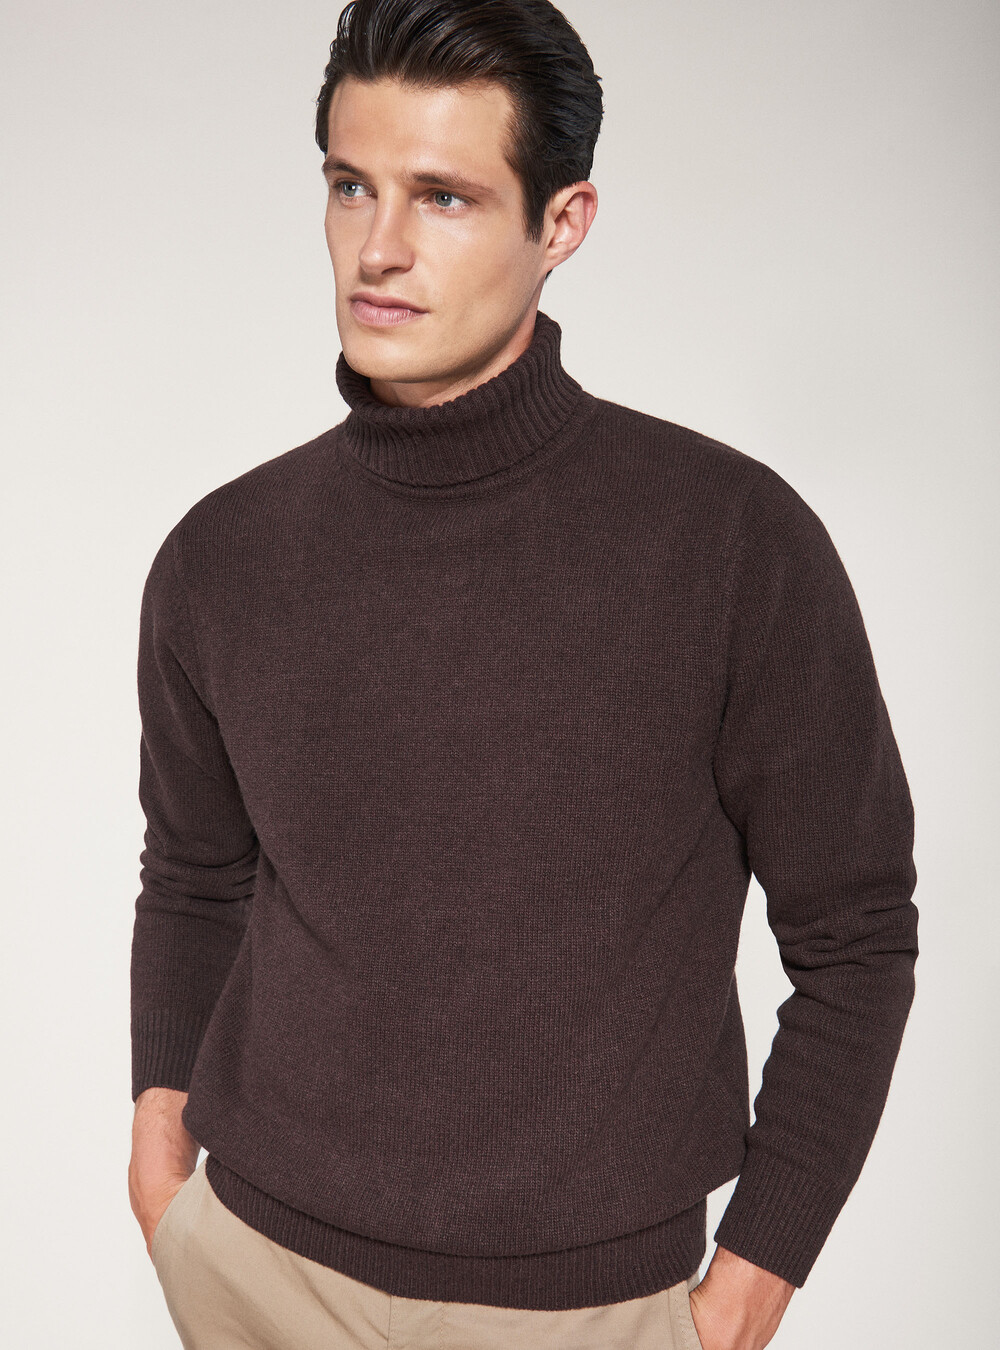 Wool turtleneck | GutteridgeUS | Men's catalog-gutteridge-storefront